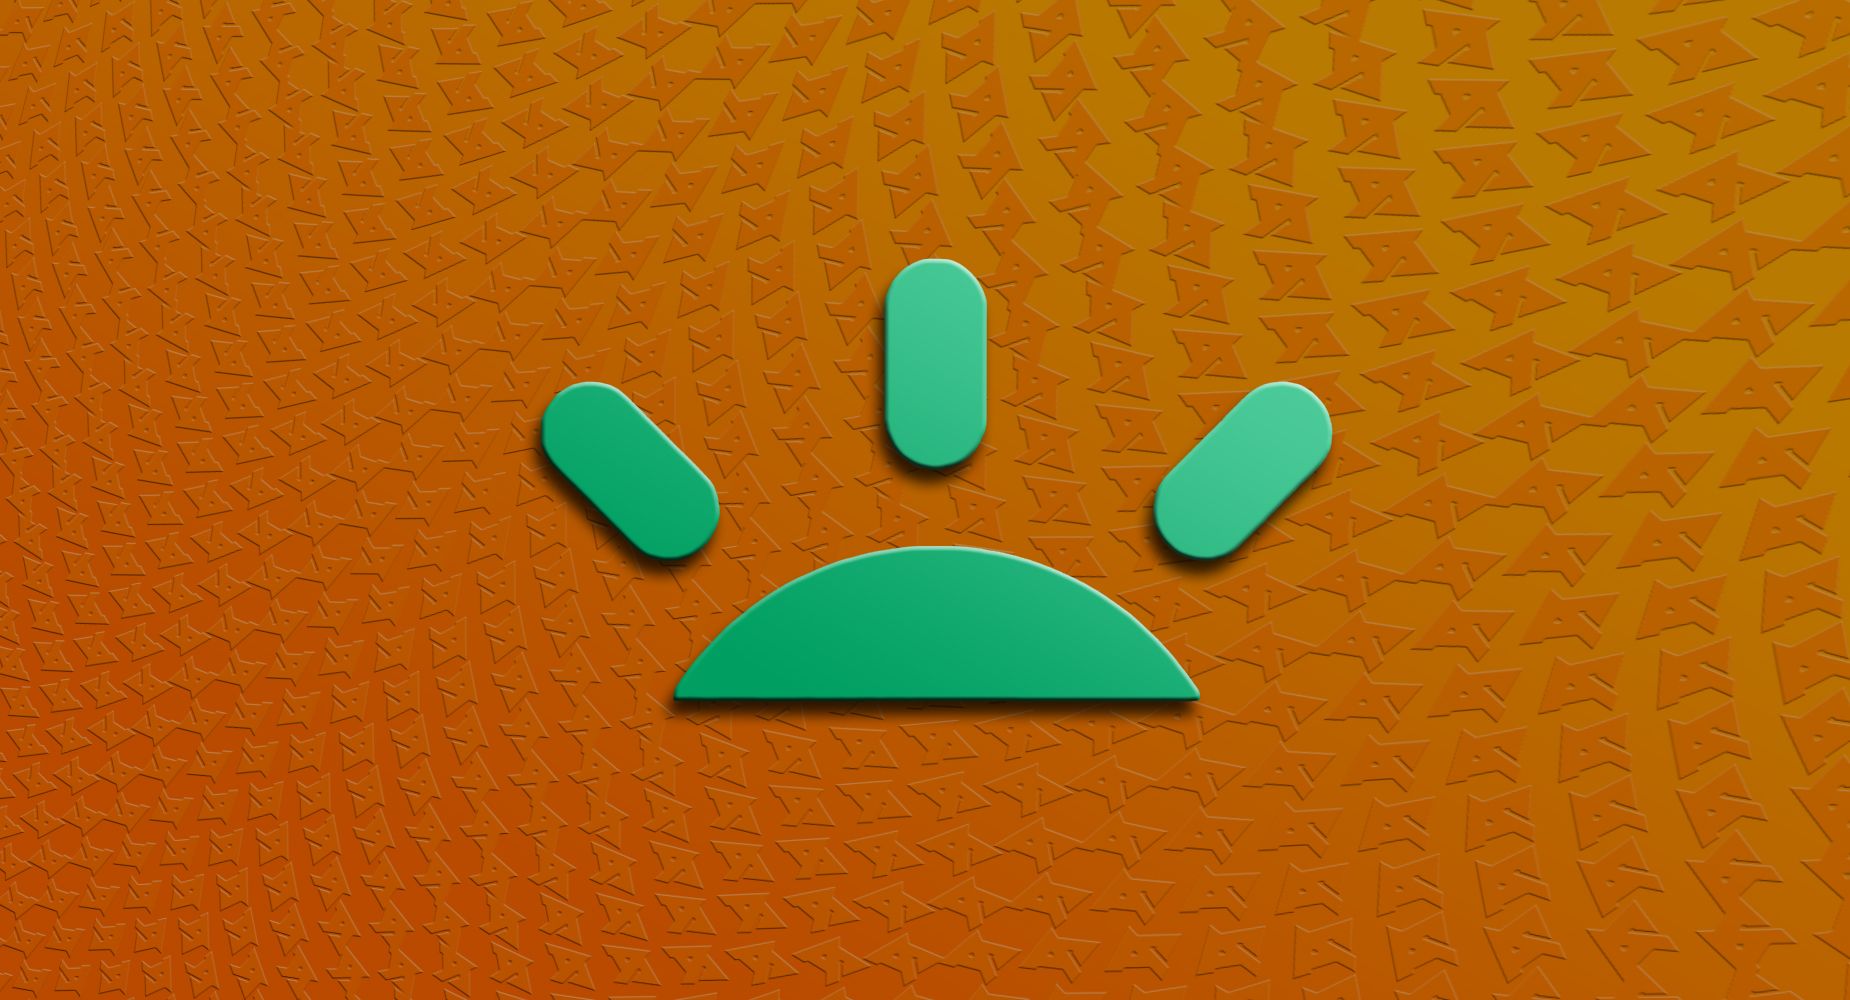 GoFundMe logo on an orange background overlaid with AP logos